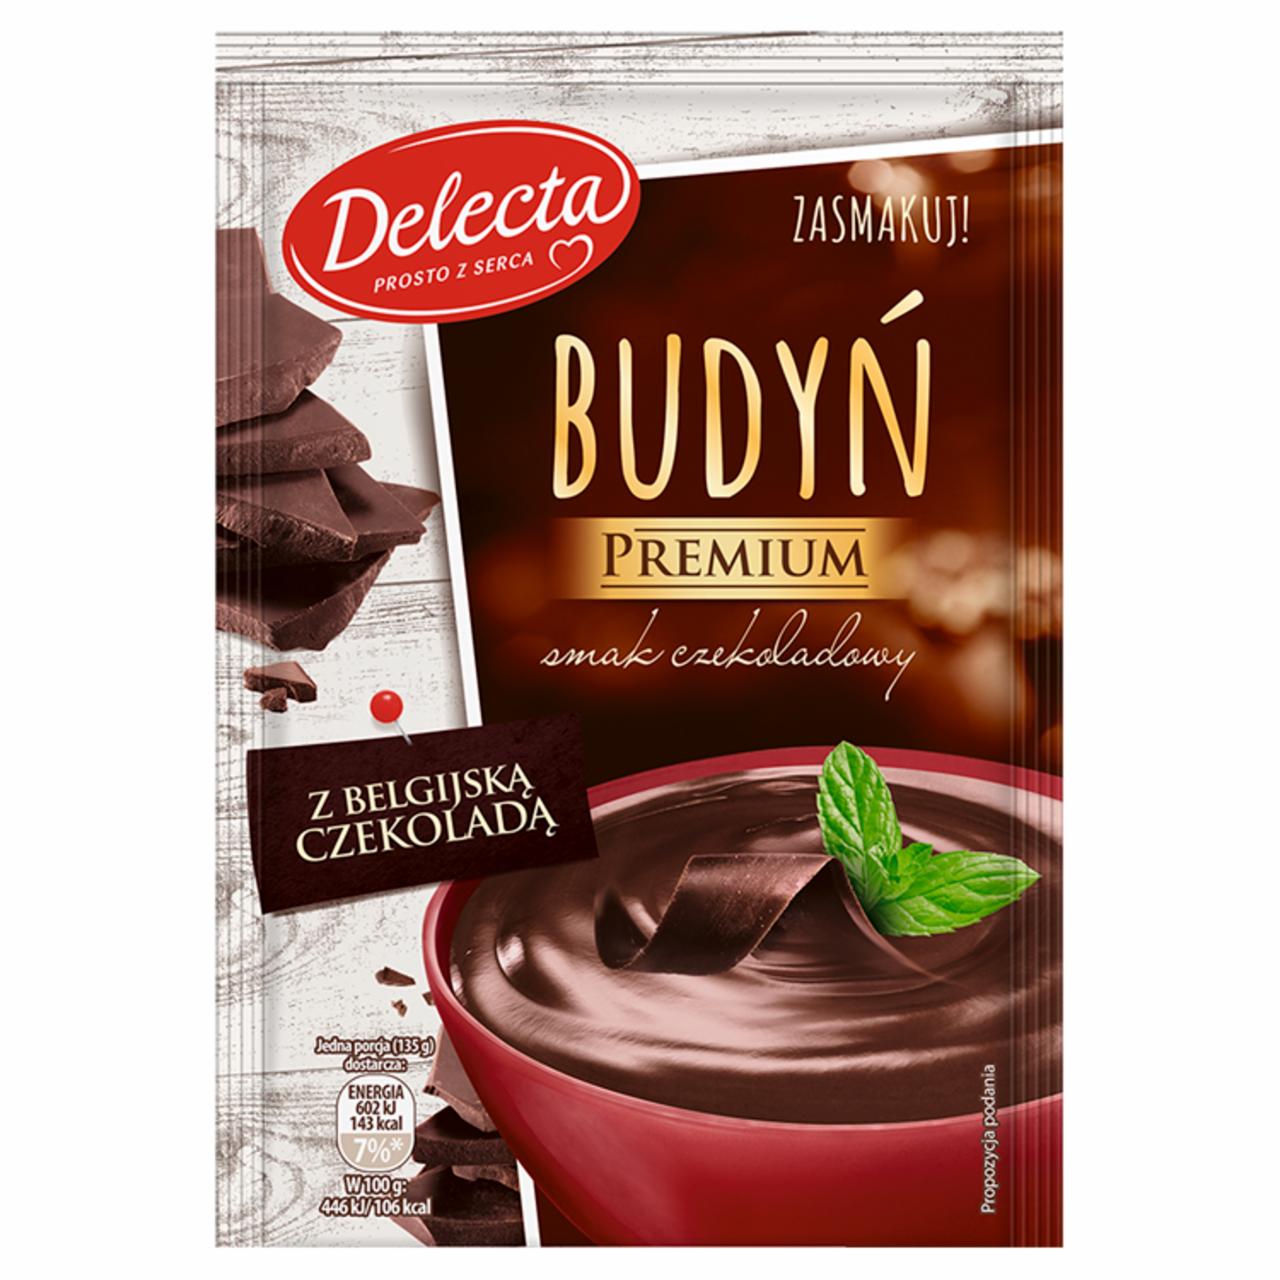 Zdjęcia - Delecta Premium Budyń smak czekoladowy z belgijską czekoladą 47 g